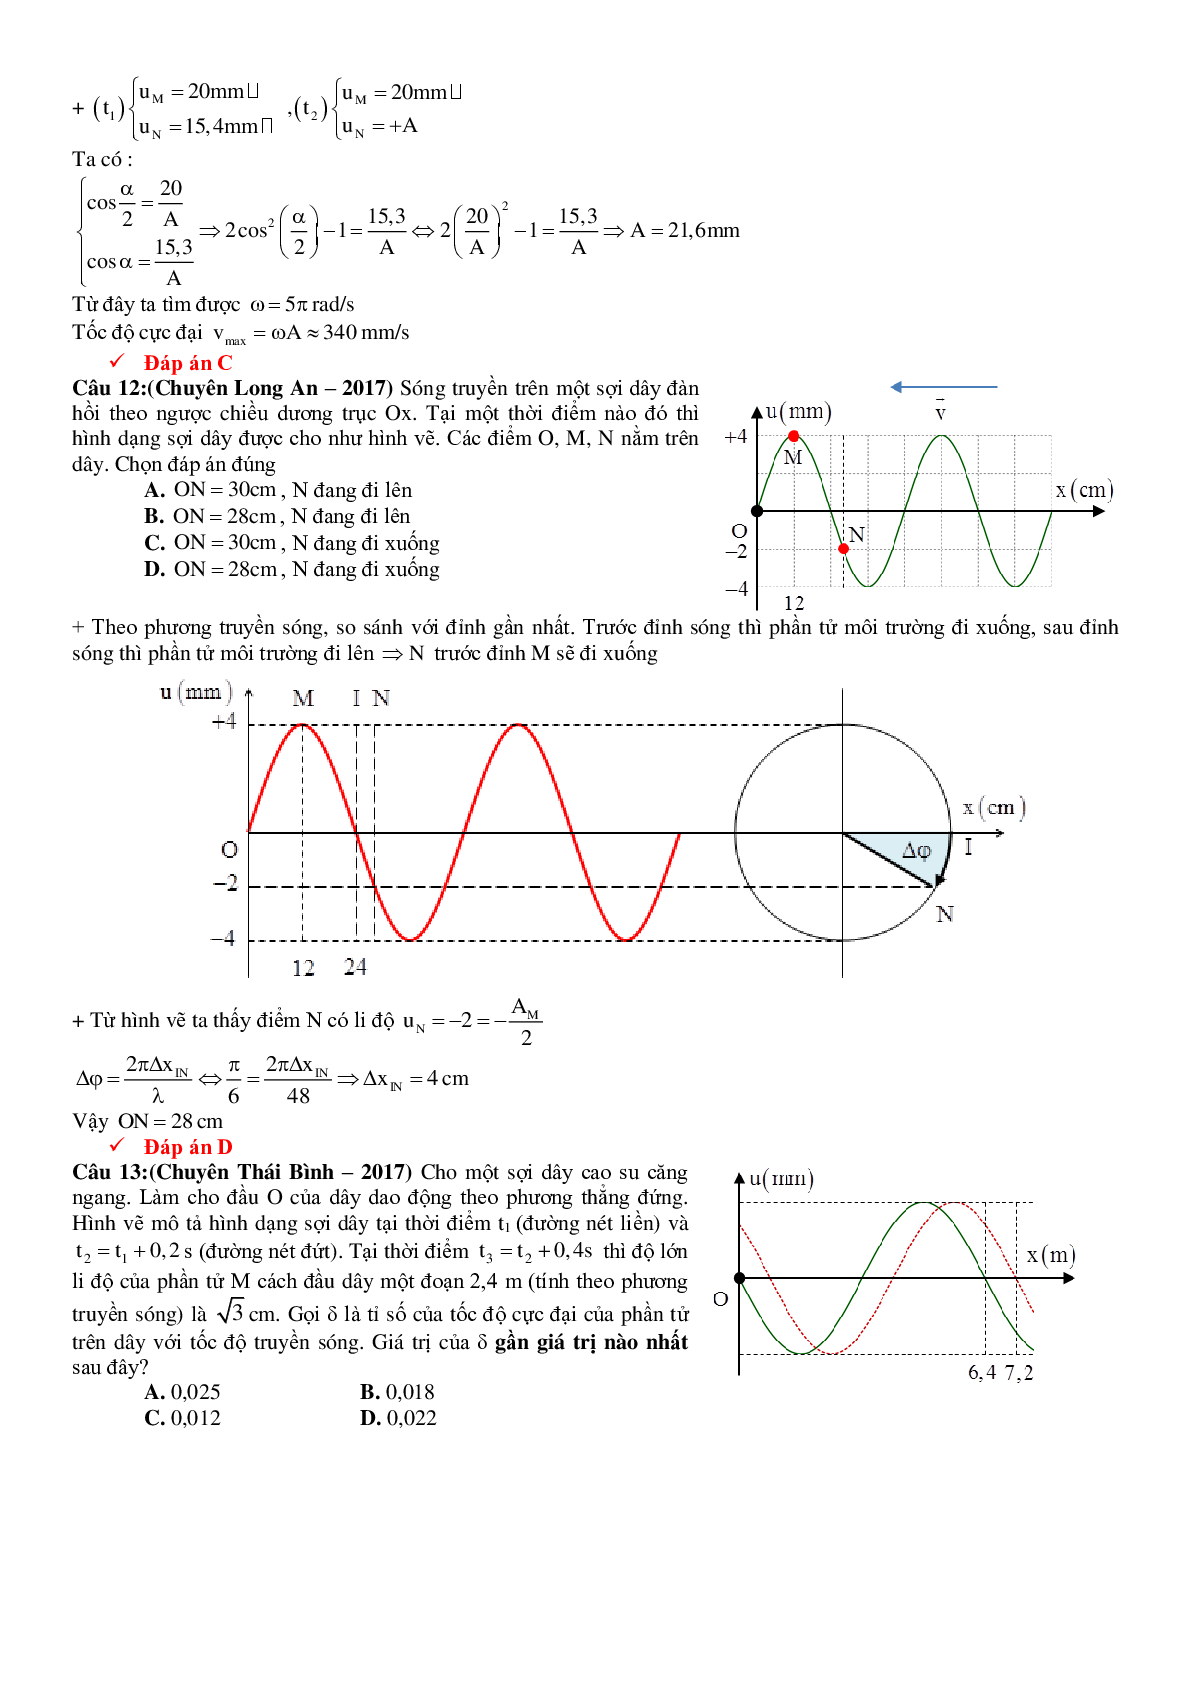 Lý thuyết, bài tập Đồ thị sóng cơ có đáp án (trang 5)